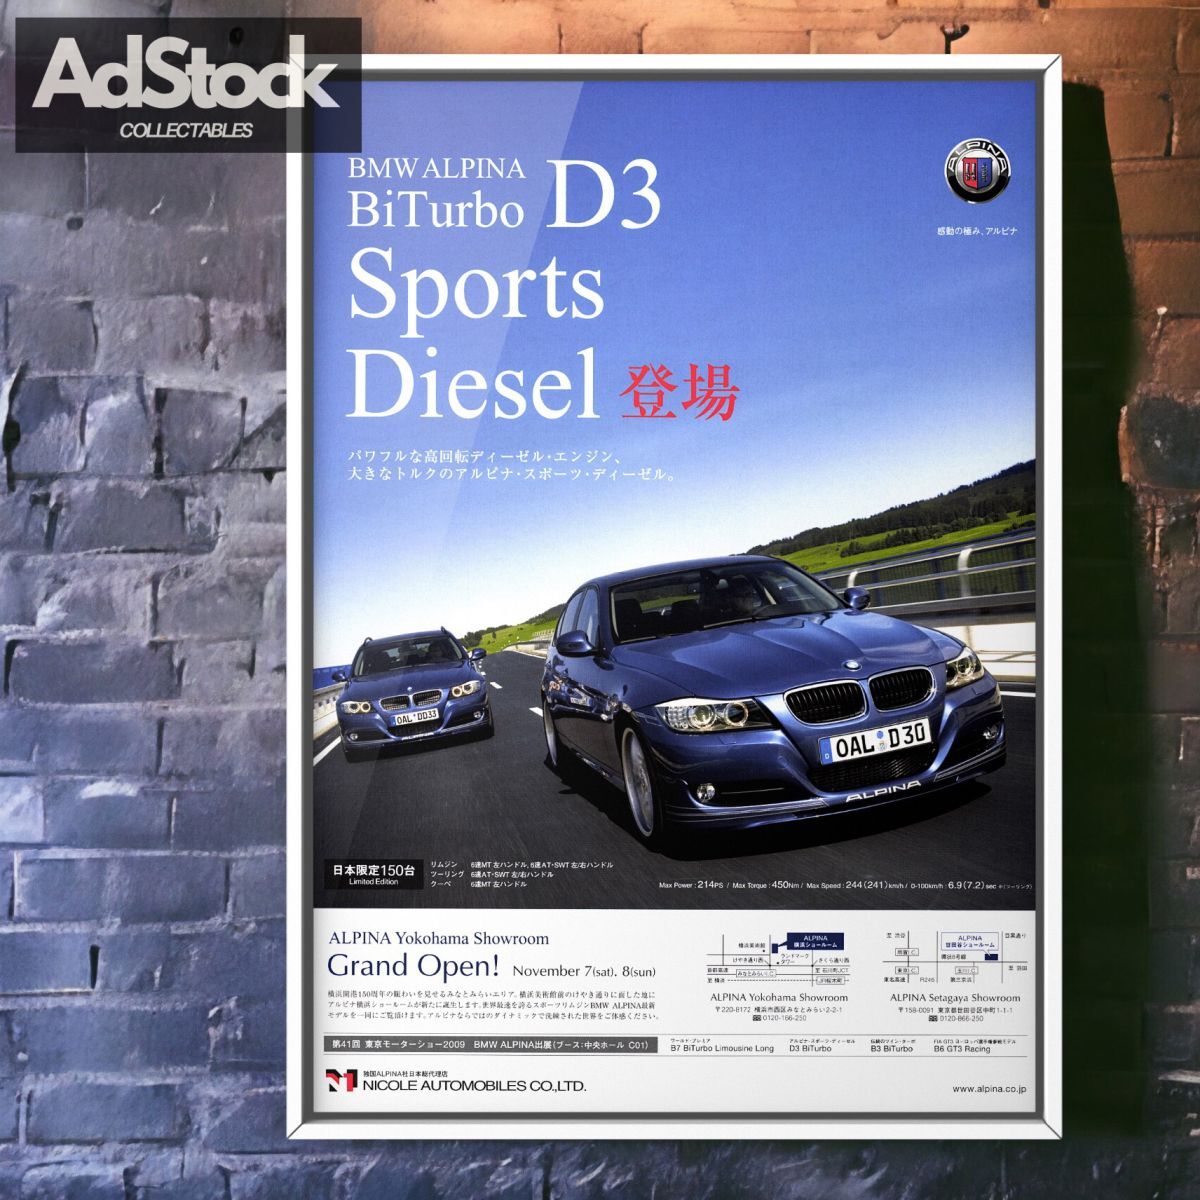 2010s 当時物!!! BMW ALPINA 広告/ポスター D3 BiTurbo D3ビターボ アルピナD3ビターボ ツーリング ディーゼル MT 1_画像1